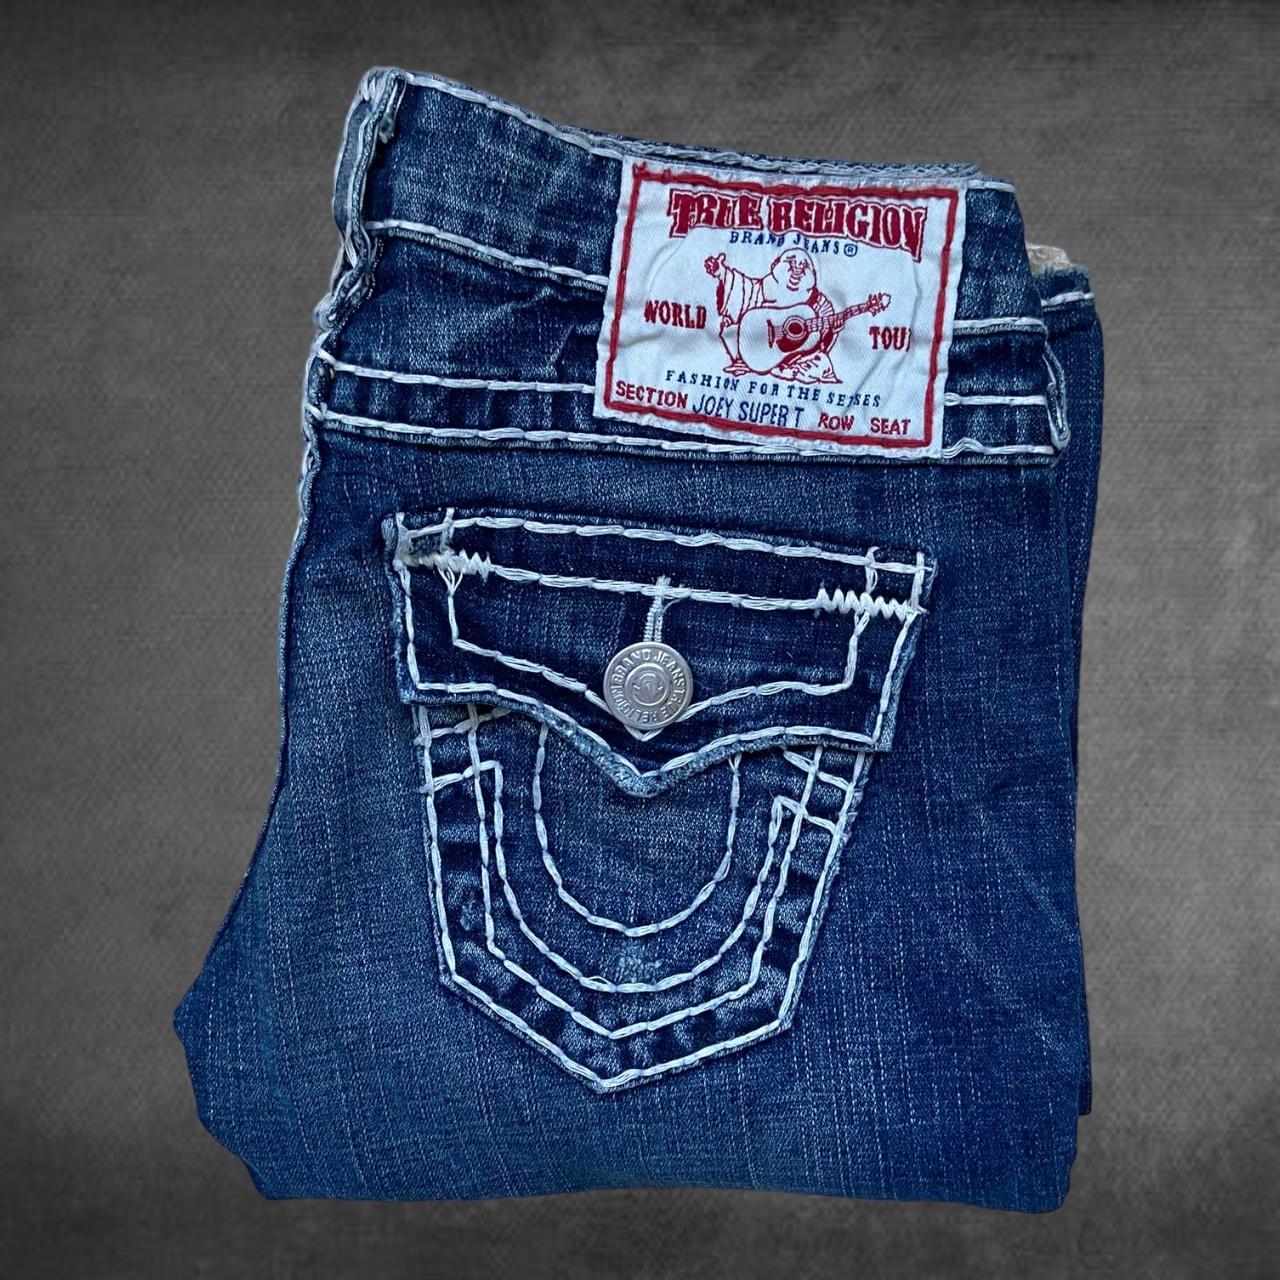 True Religion Women'sJoey Super T Jeans, perfect... - Depop